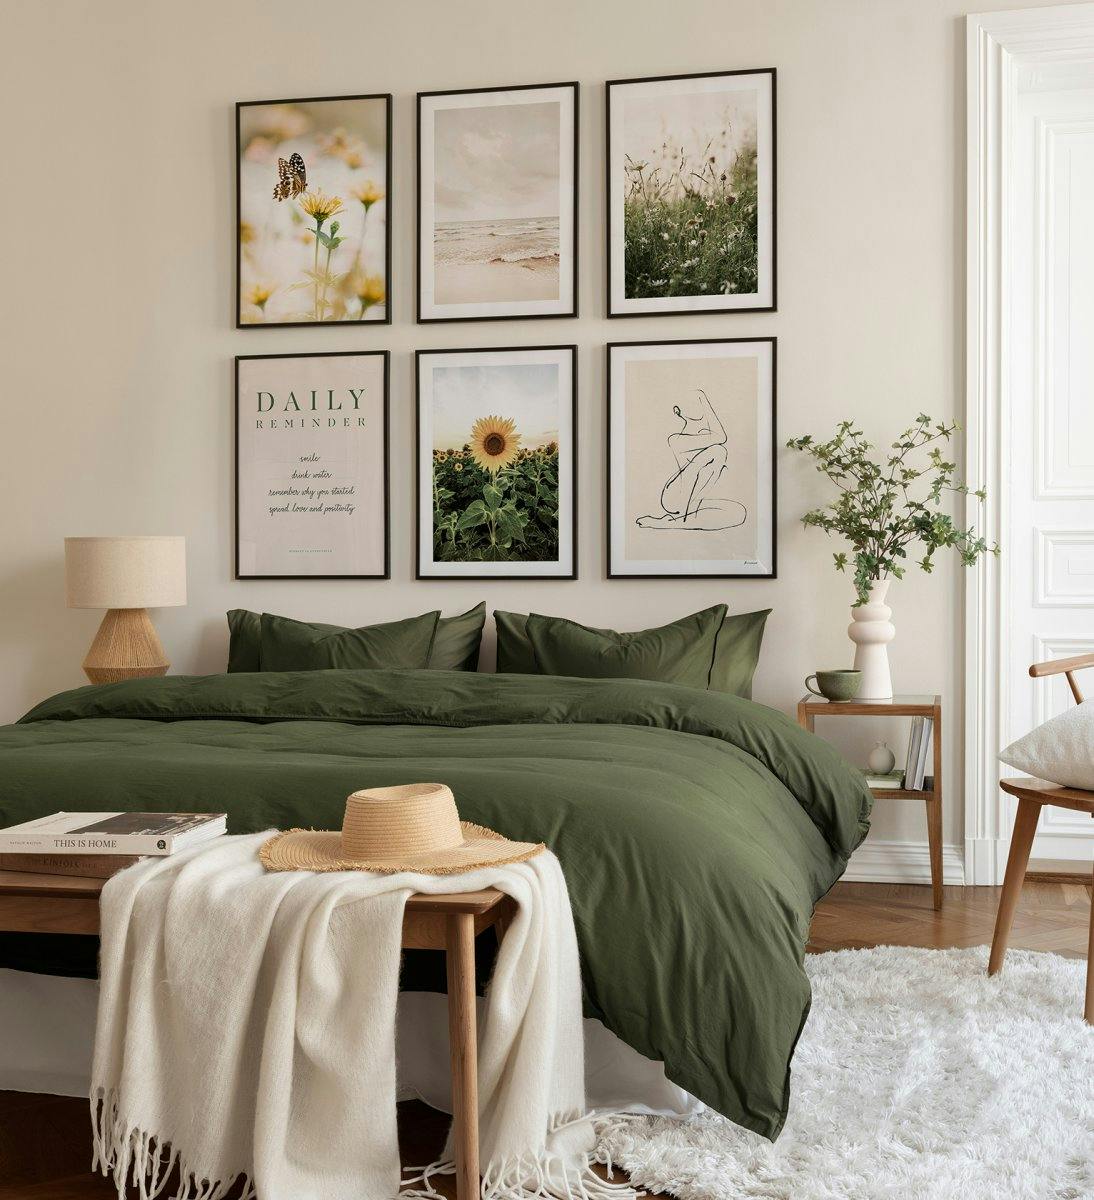 Piękna galeria obrazów z motywami przyrodniczymi w zieleni idealnie nadaje się do sypialni w czarnych drewnianych ramkach.